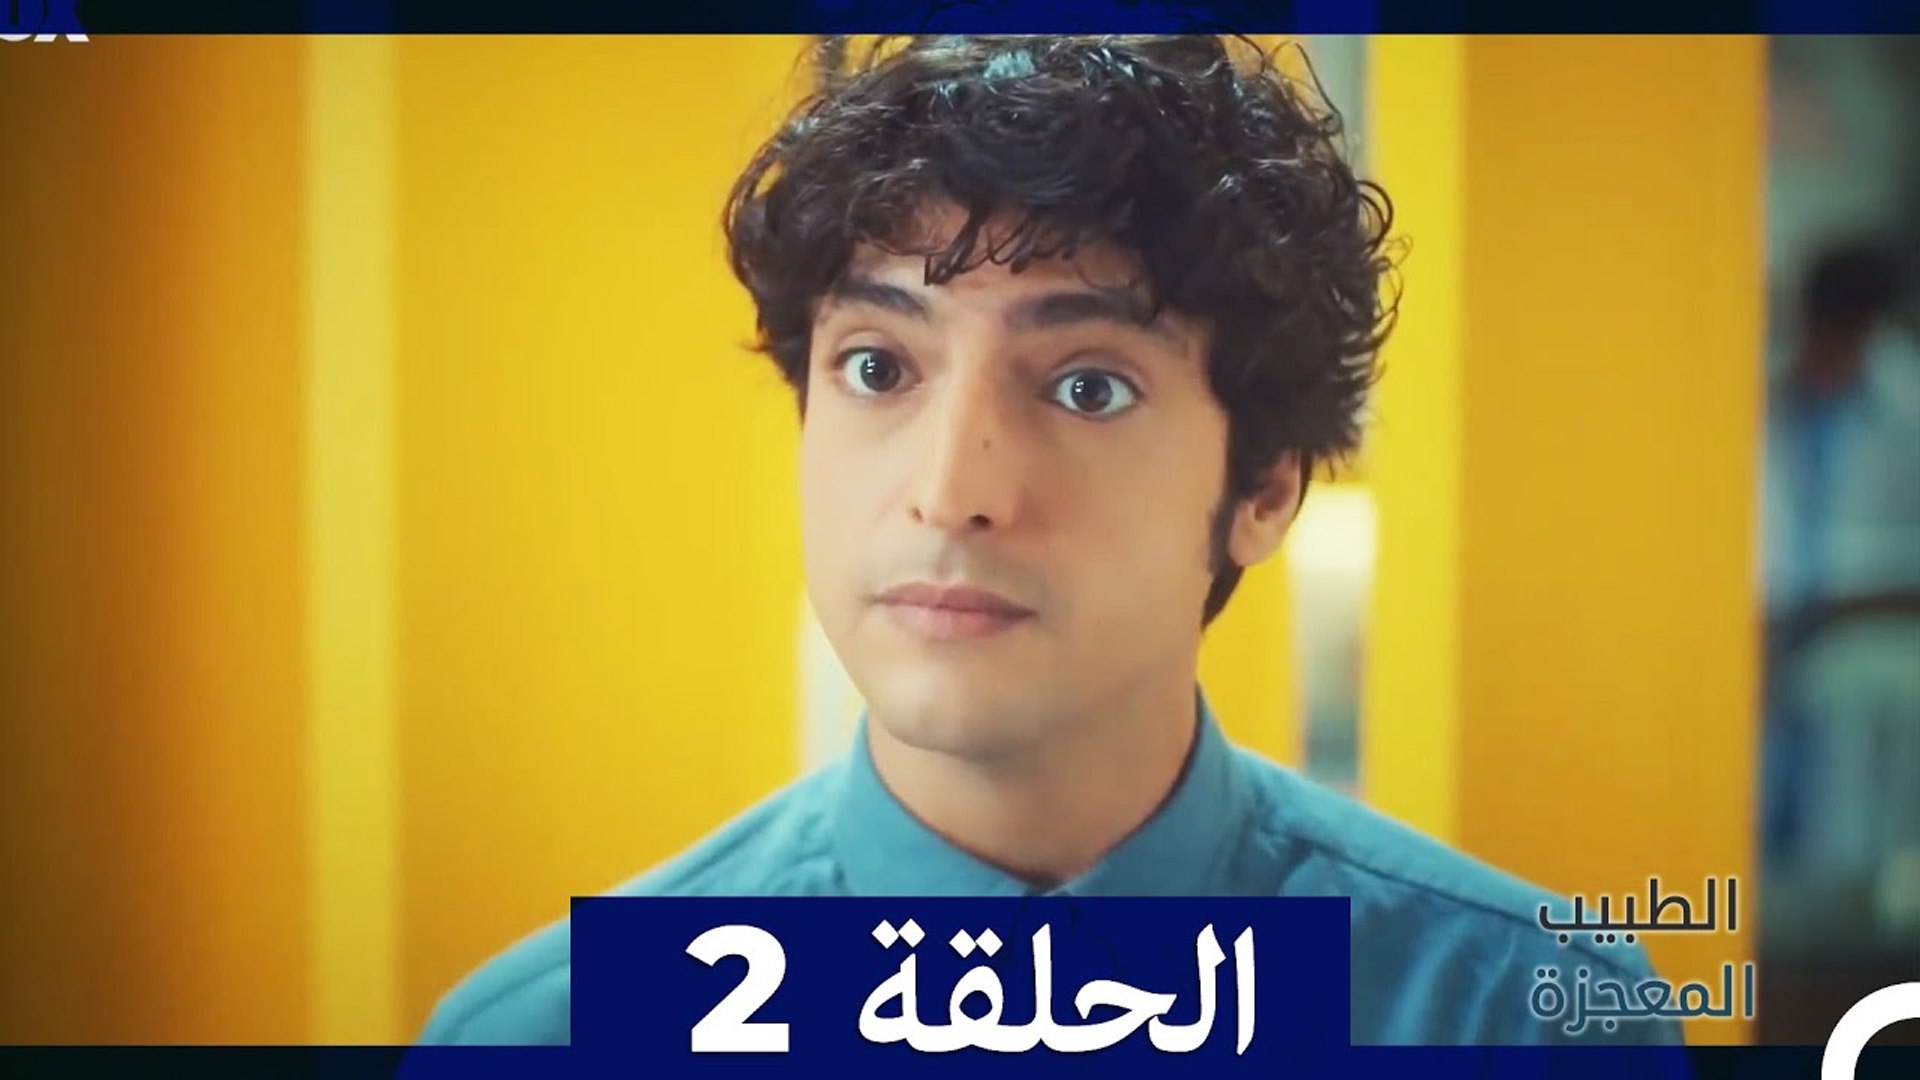 الطبيب المعجزة الحلقة 2 (Arabic Dubbed) - فيديو Dailymotion